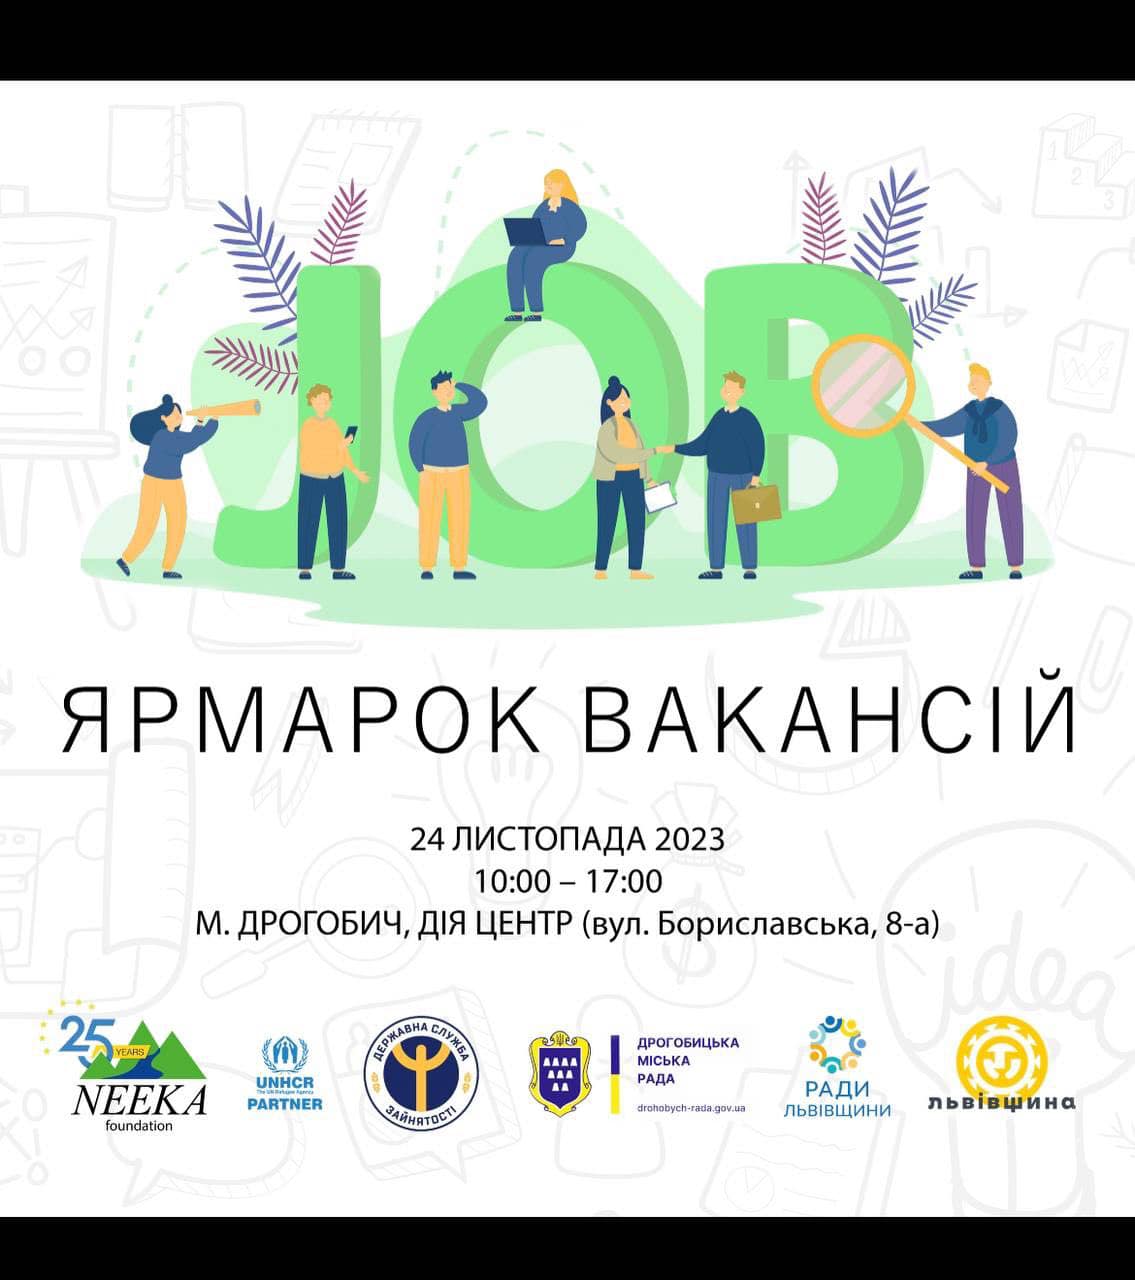 У Дрогобичі відбудеться ярмарок вакансій: запрошують мешканців та підприємців громади 